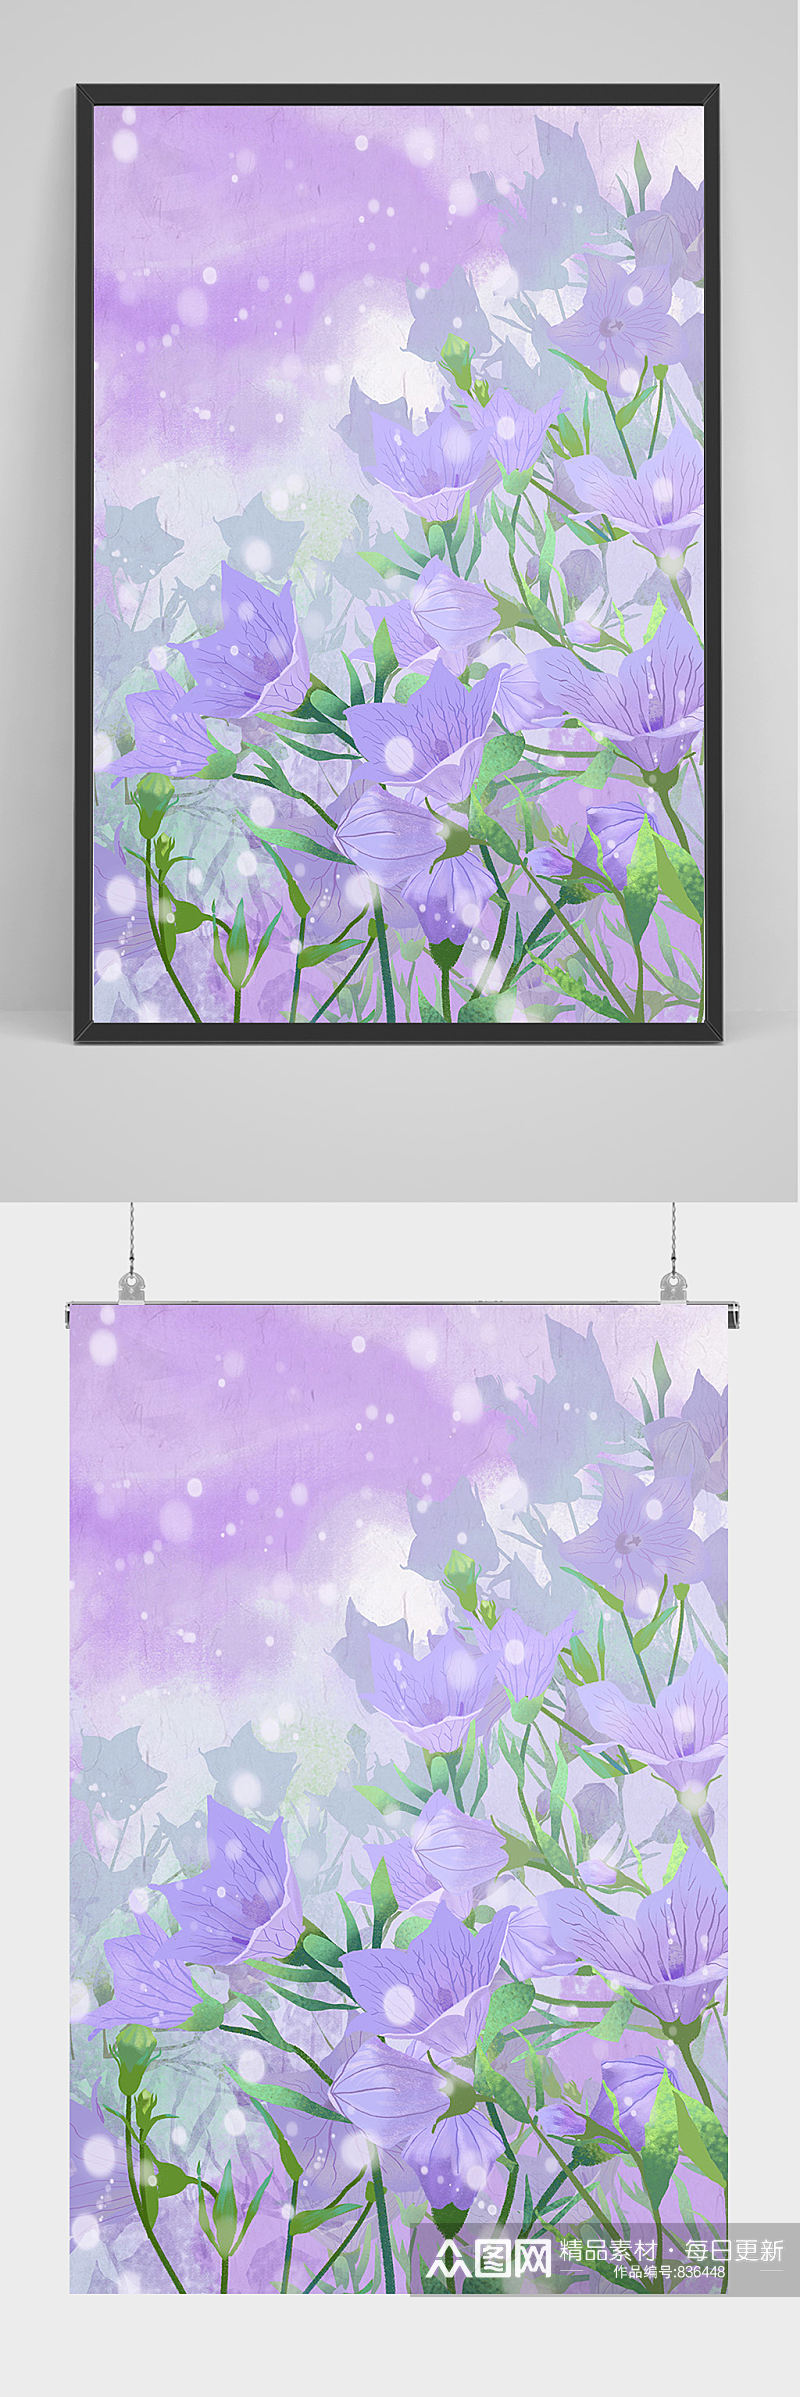 唯美紫色鲜花插画设计素材